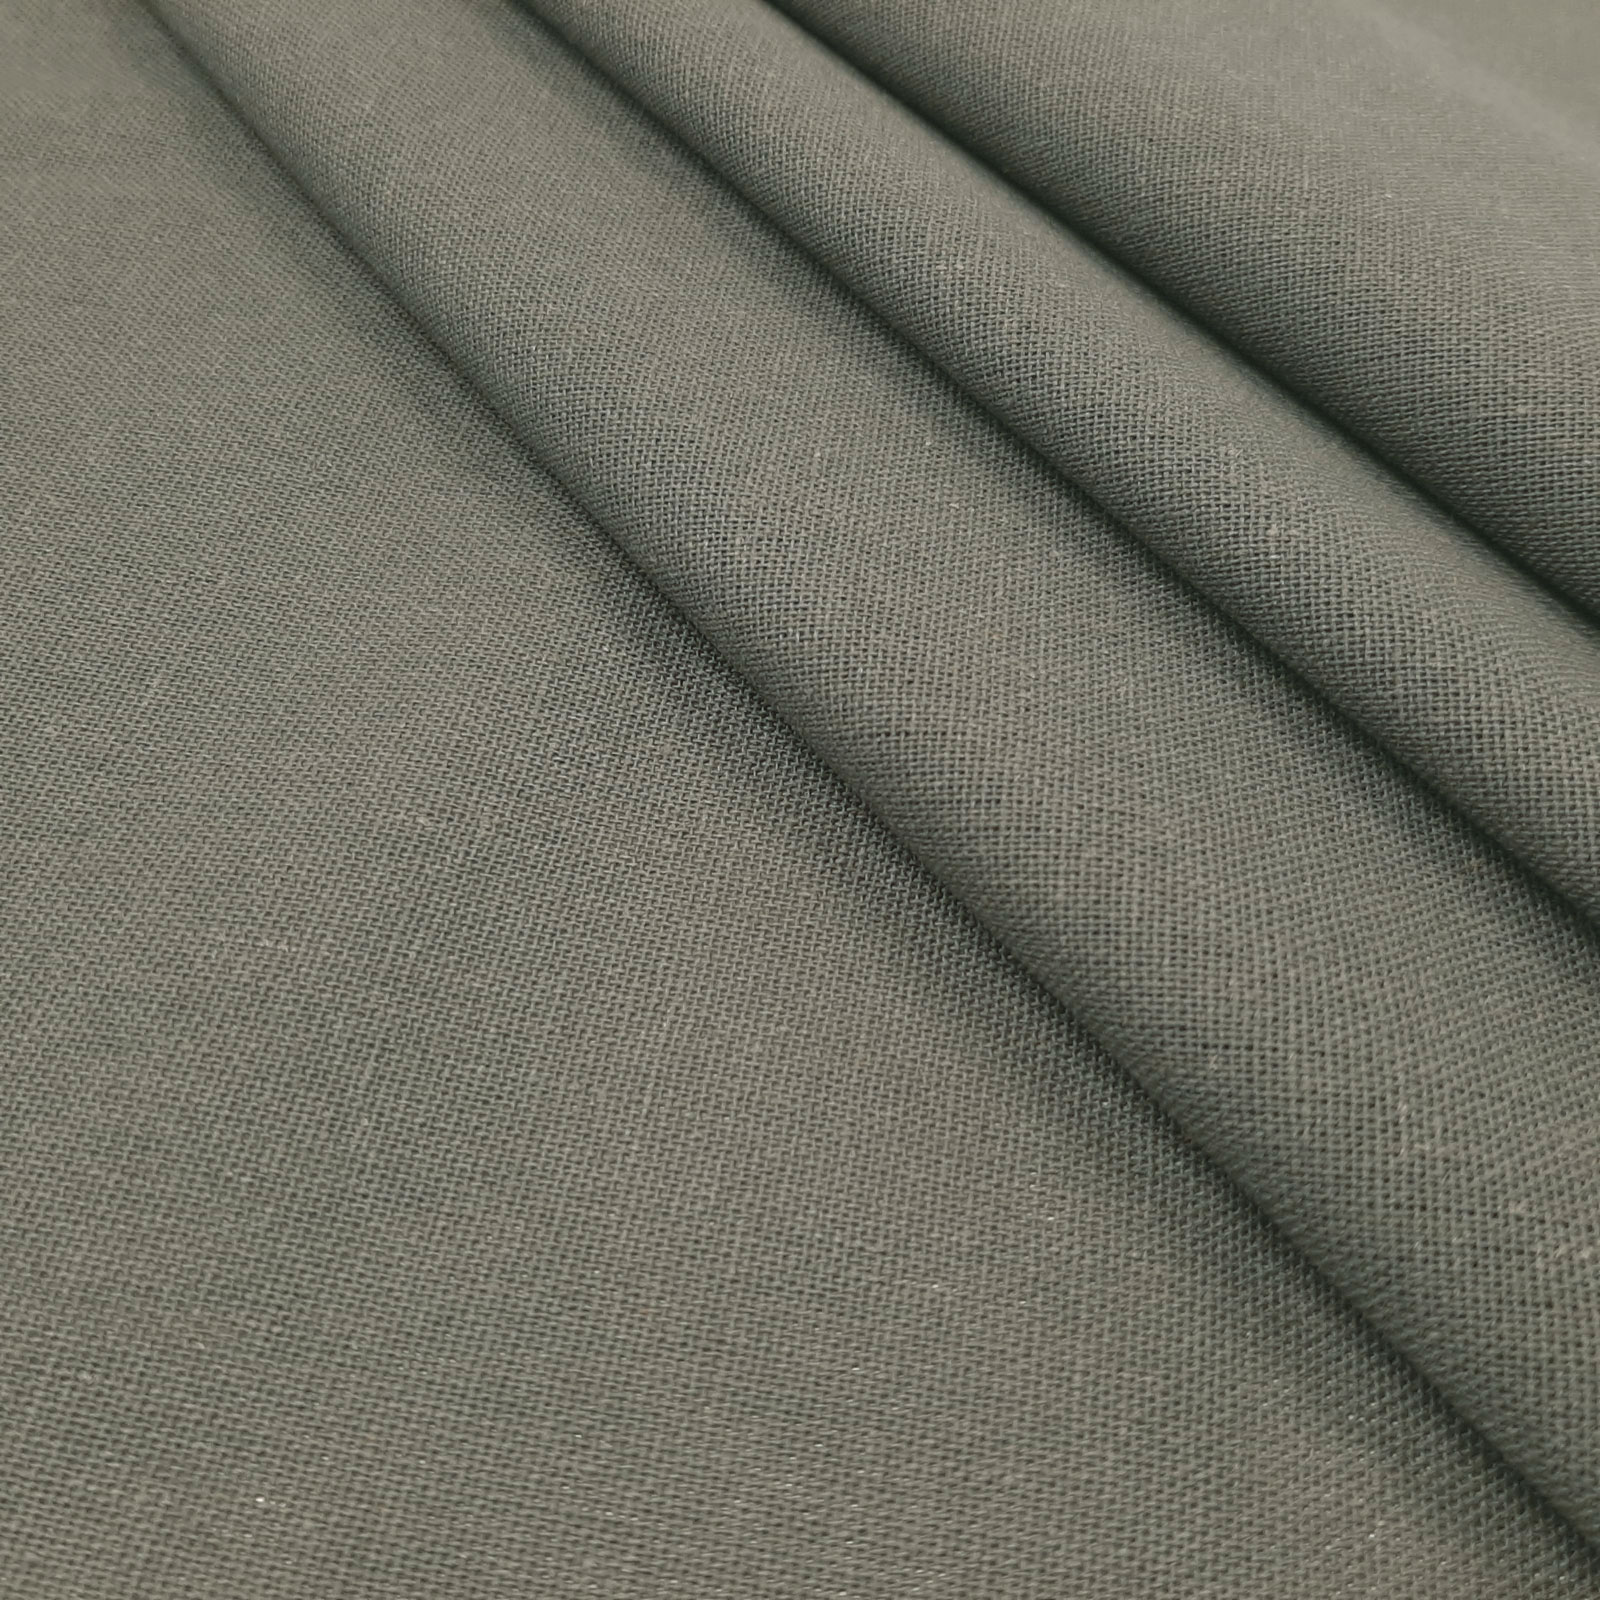 Bella - tecido de linho natural de algodão - Cinza Escuro